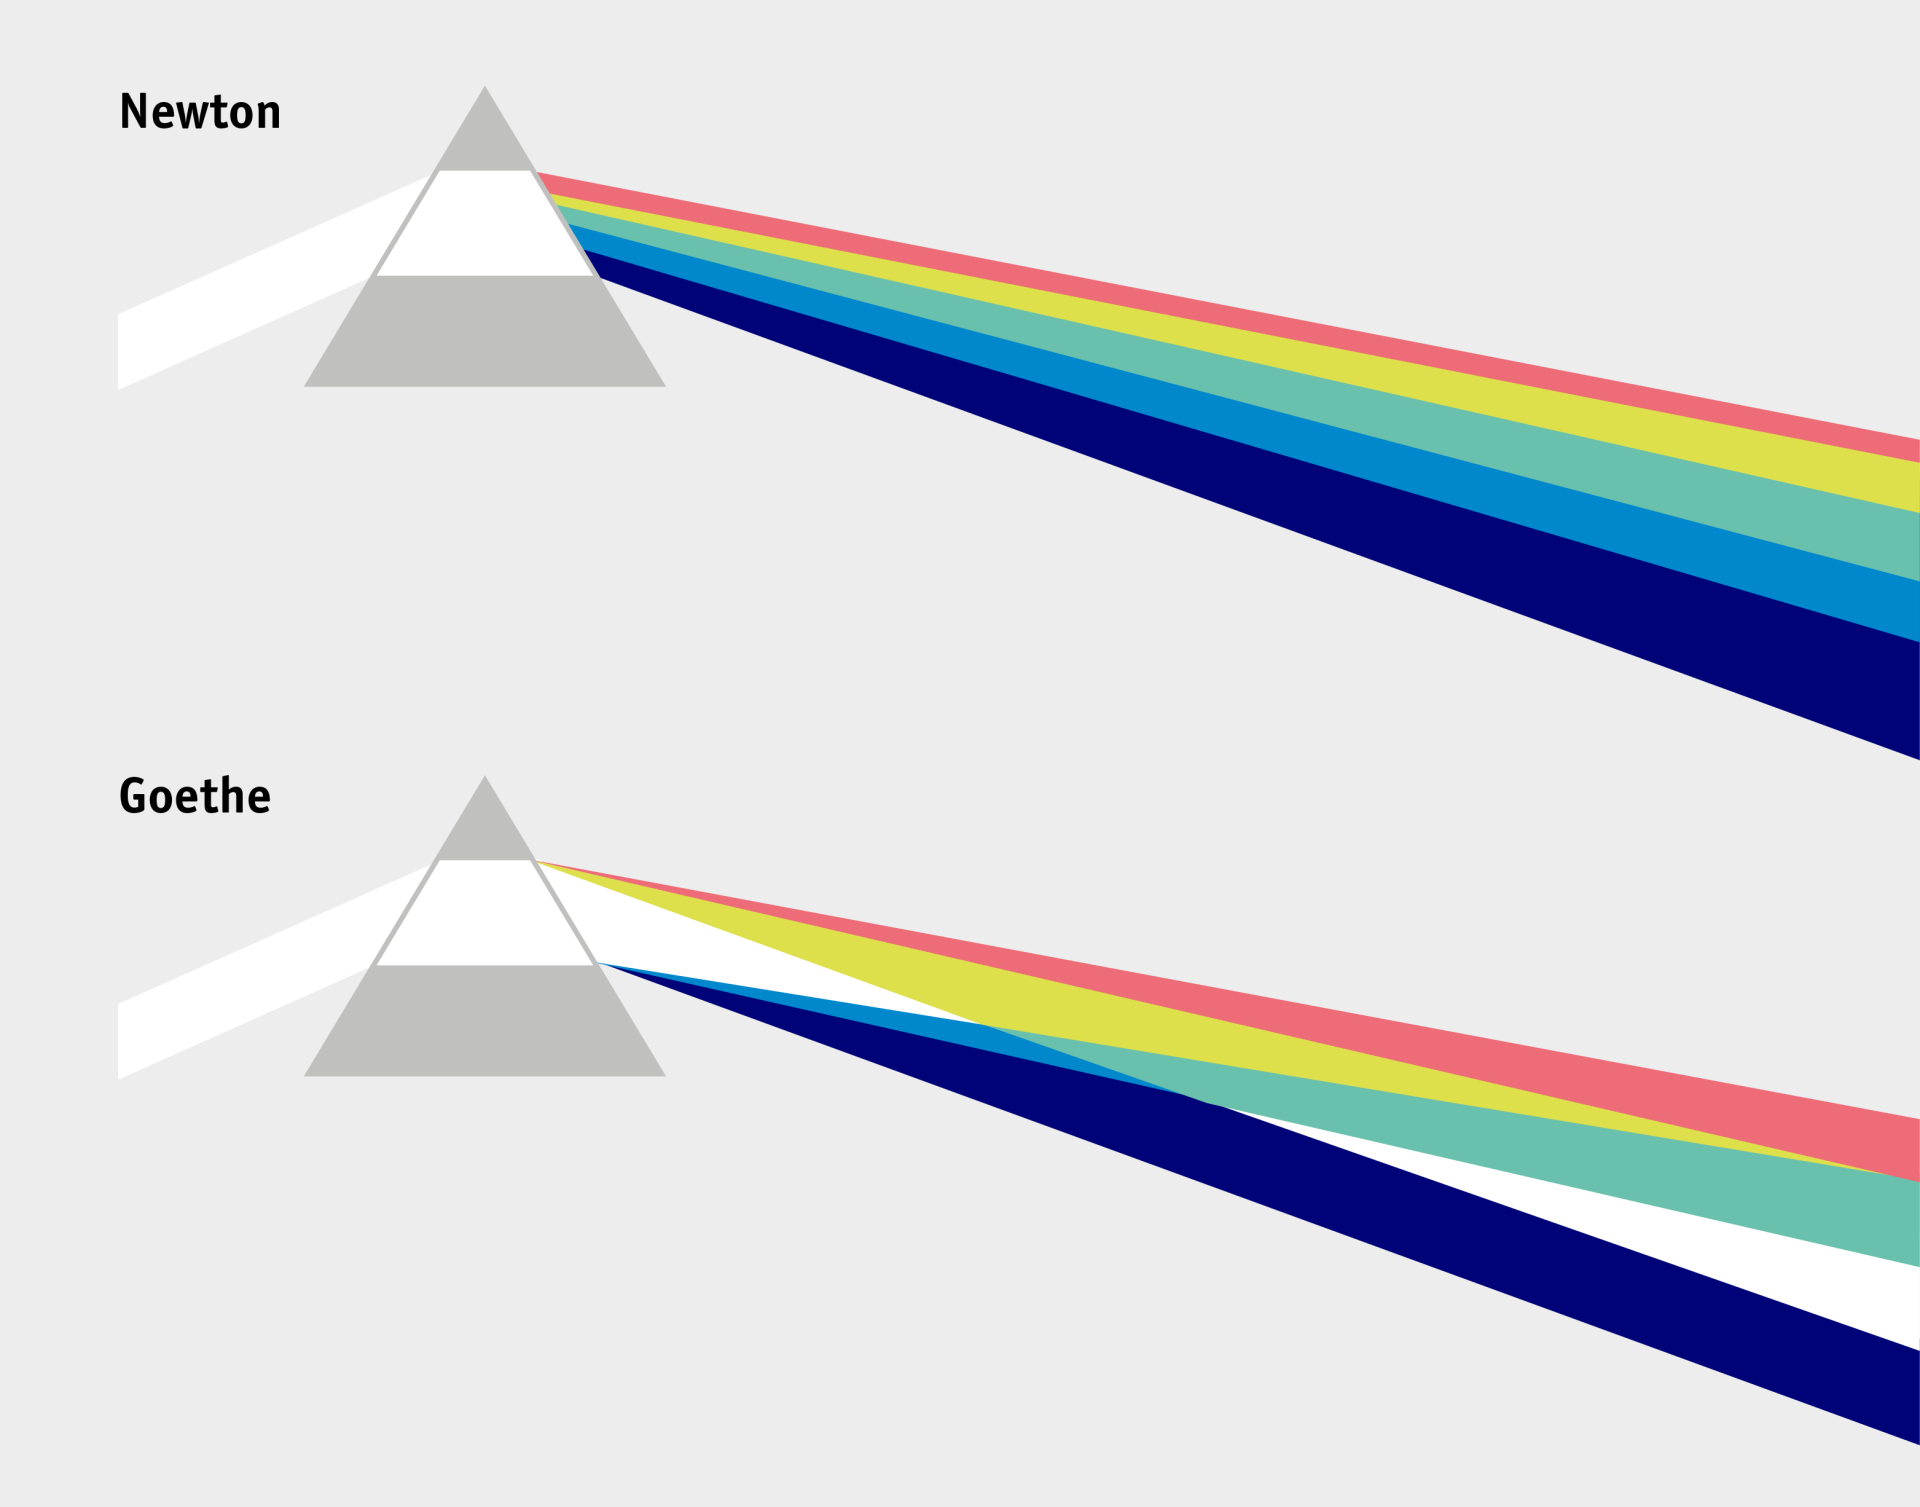 Farbenlehre von Newton und Goethe: Licht bricht sich in einem Prisma und wird aufgefächert nebeneinander bzw. bei Goethe mit Überschneidungen, in denen neue Farben entstehen, weitergeleitet